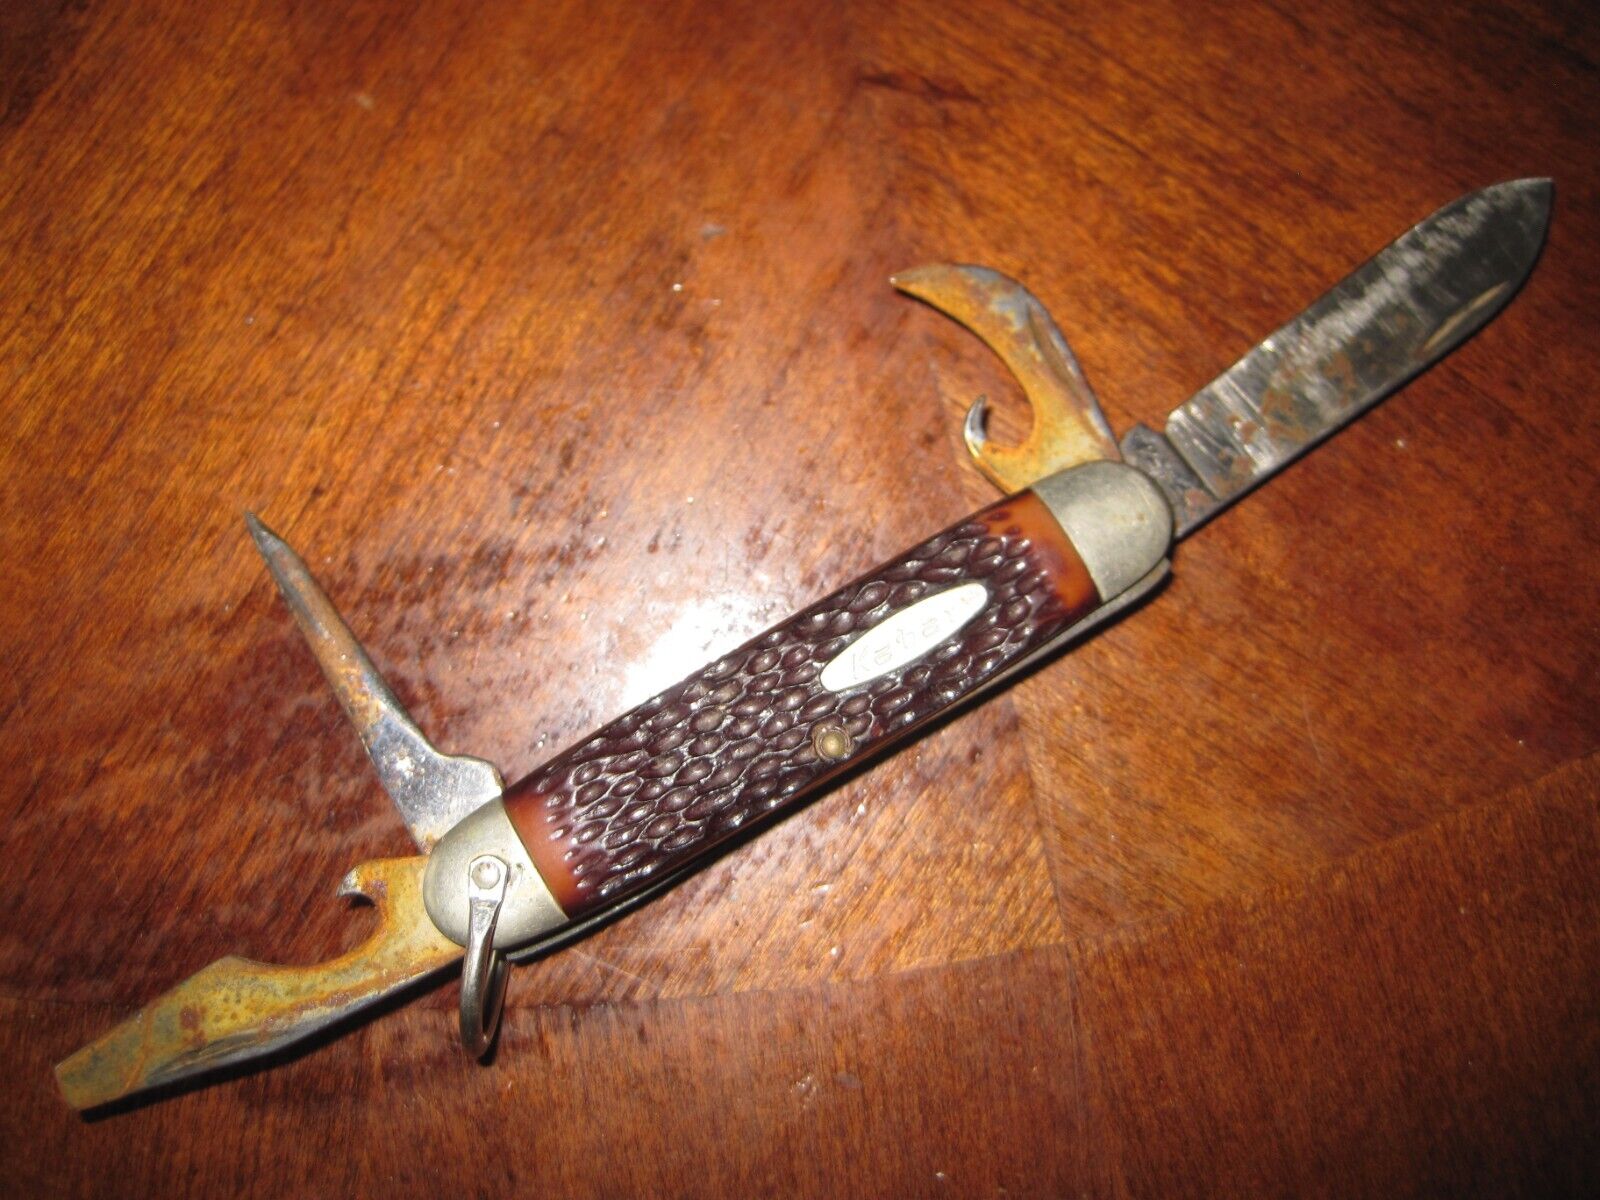 Vintage Antique Folding Pocket Knife Kabar 1152 Multitool Multi Tool